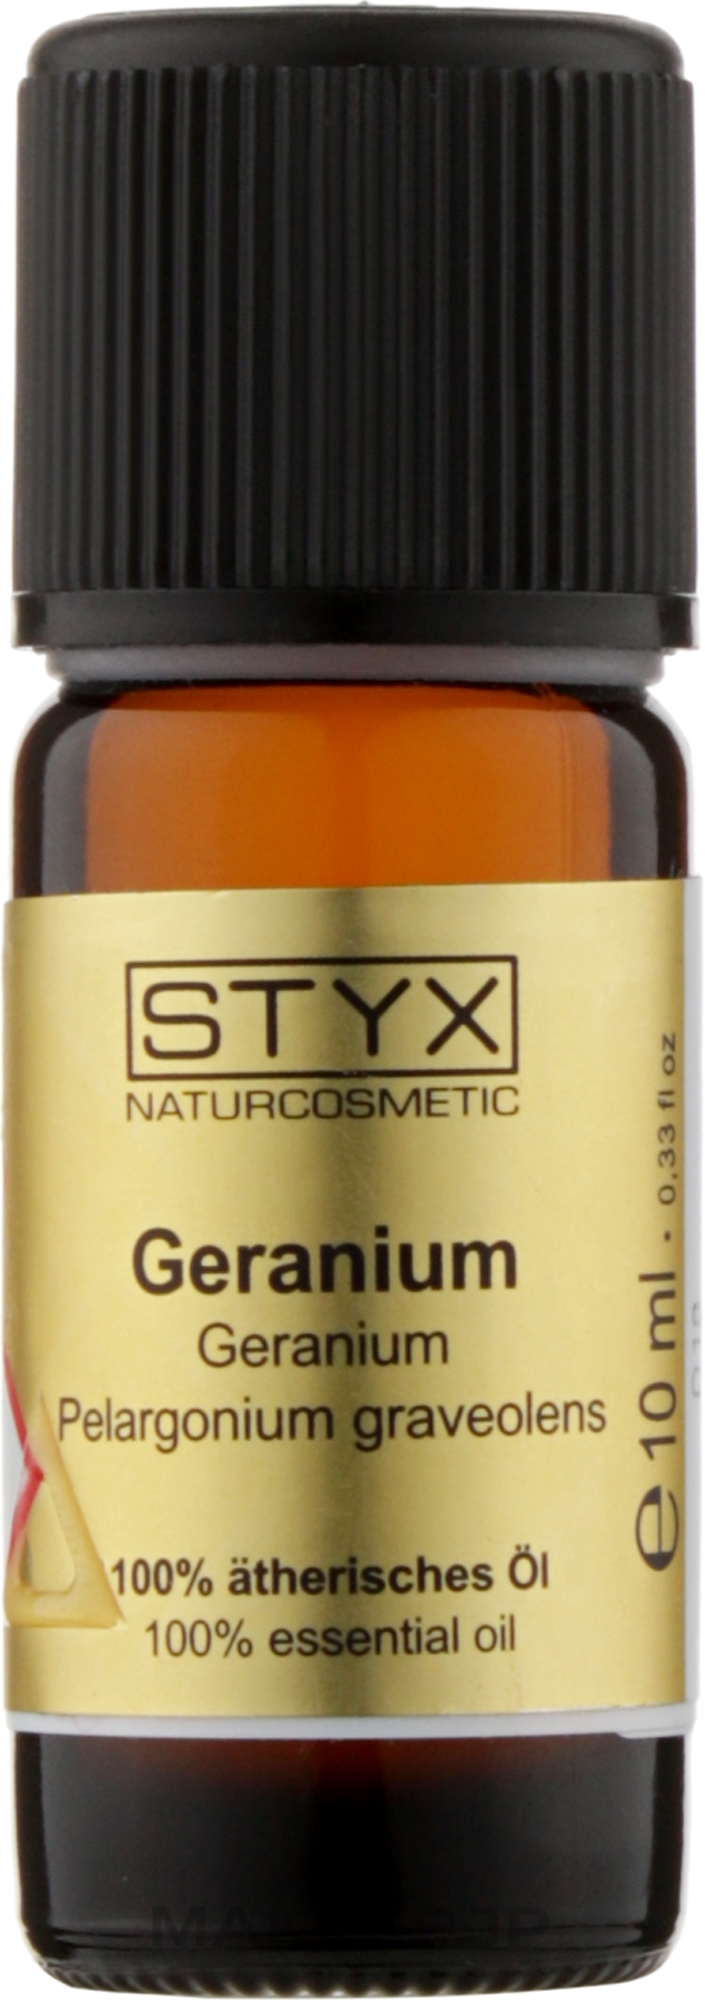 Essential Oil "Geranium" - Styx Naturcosmetic — photo 10 ml